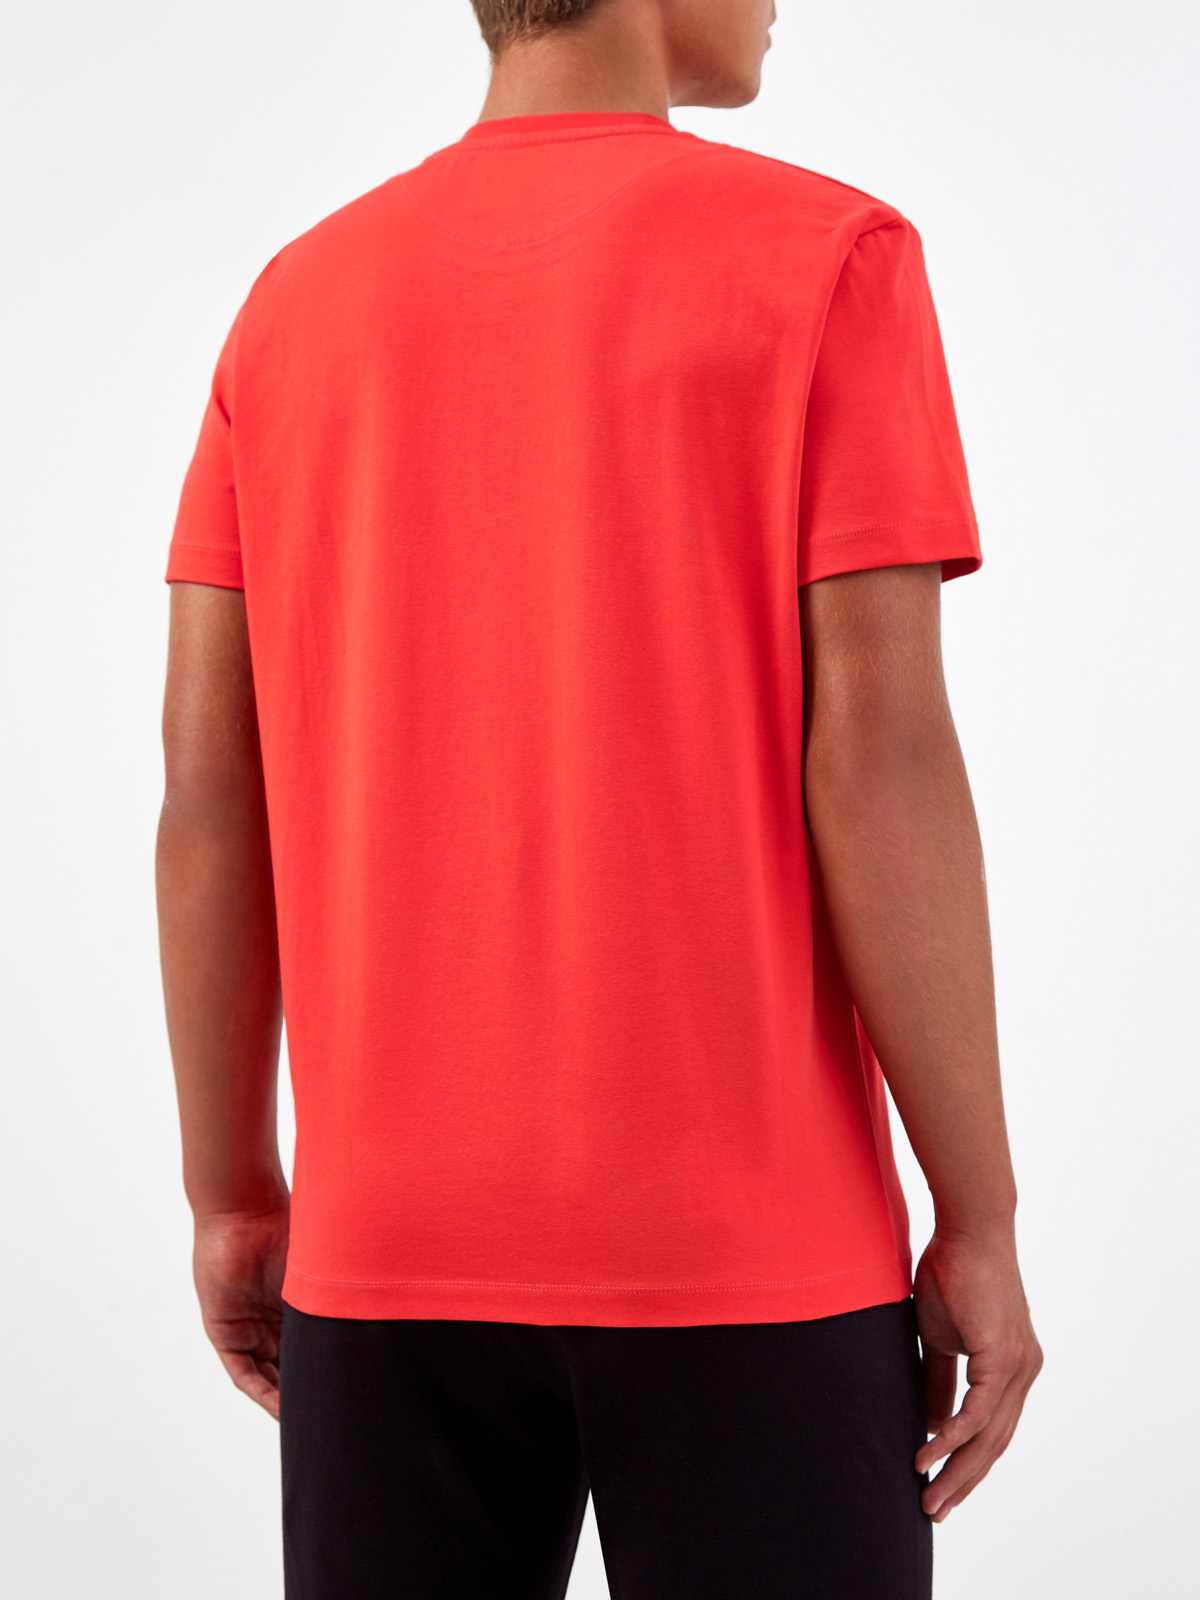 Яркая футболка из хлопка с принтом Property of BKK BIKKEMBERGS, цвет красный, размер XL;2XL;3XL;L - фото 4